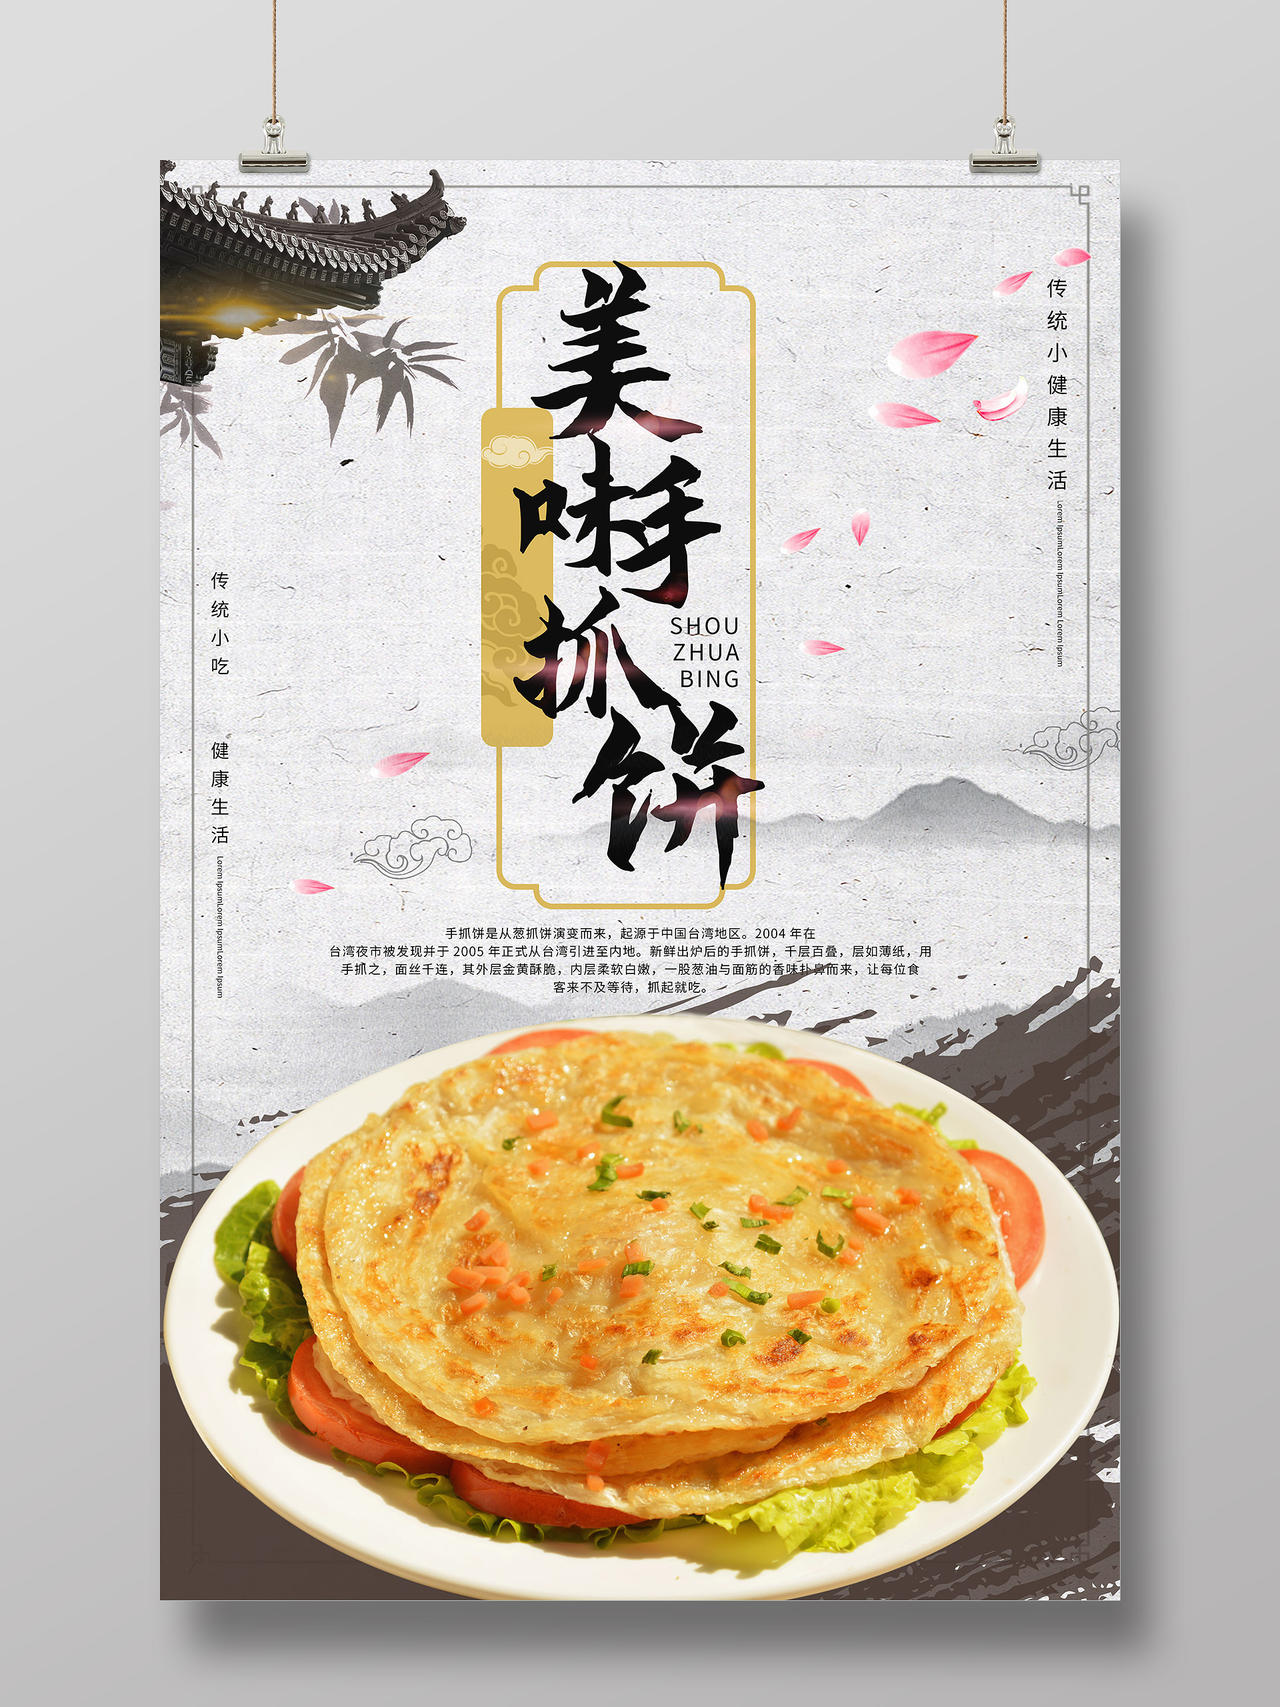 浅灰色中国风水墨美味手抓饼宣传海报设计模板